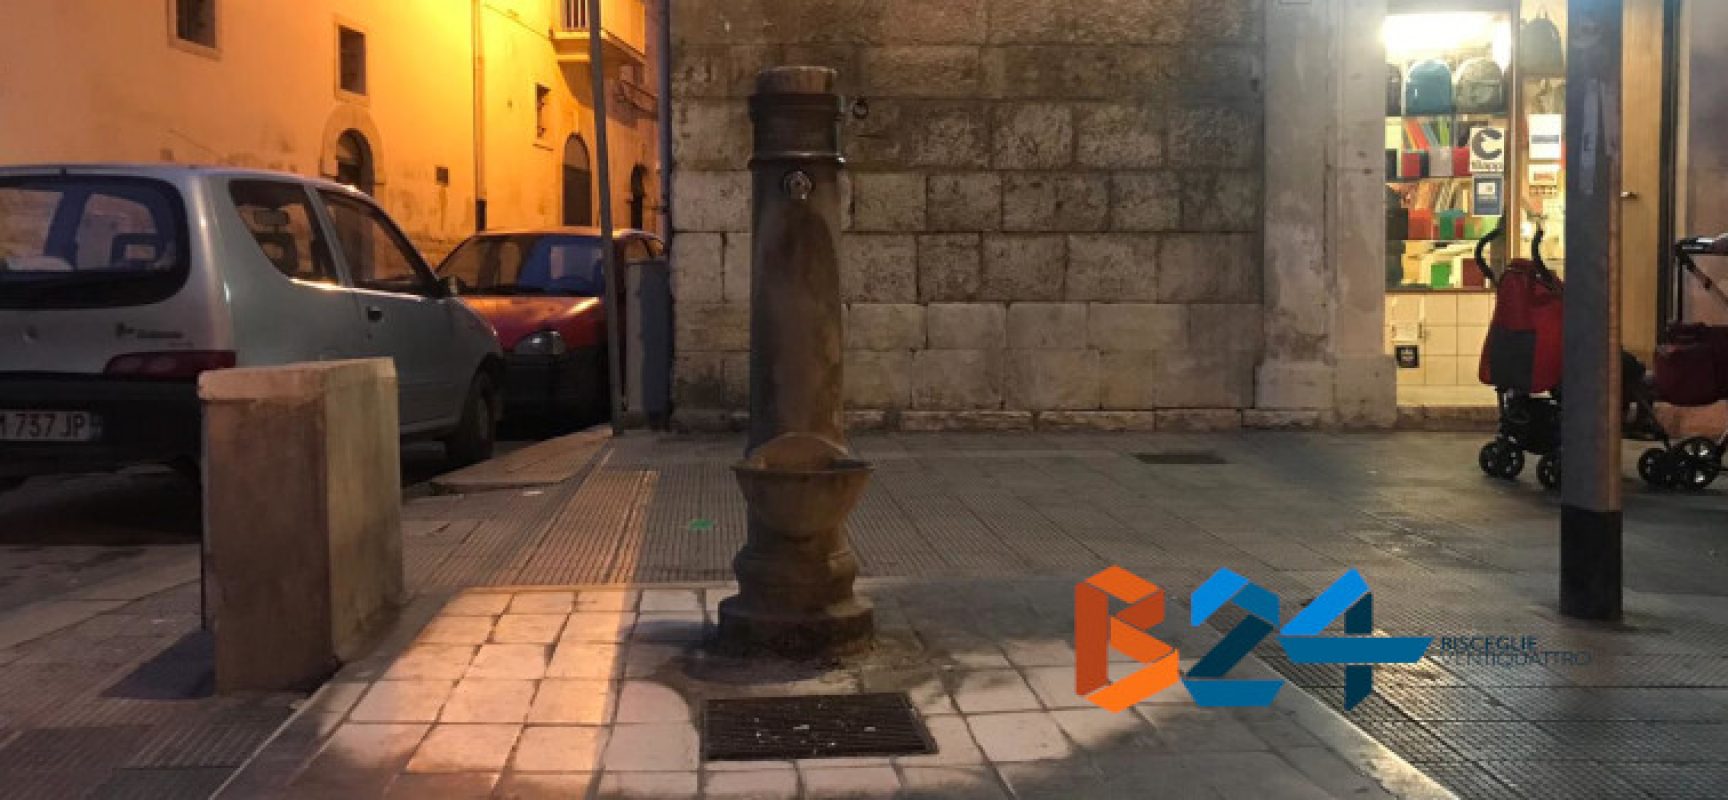 L’acqua della fontanina in zona San Lorenzo non è potabile, emesso il divieto di utilizzo